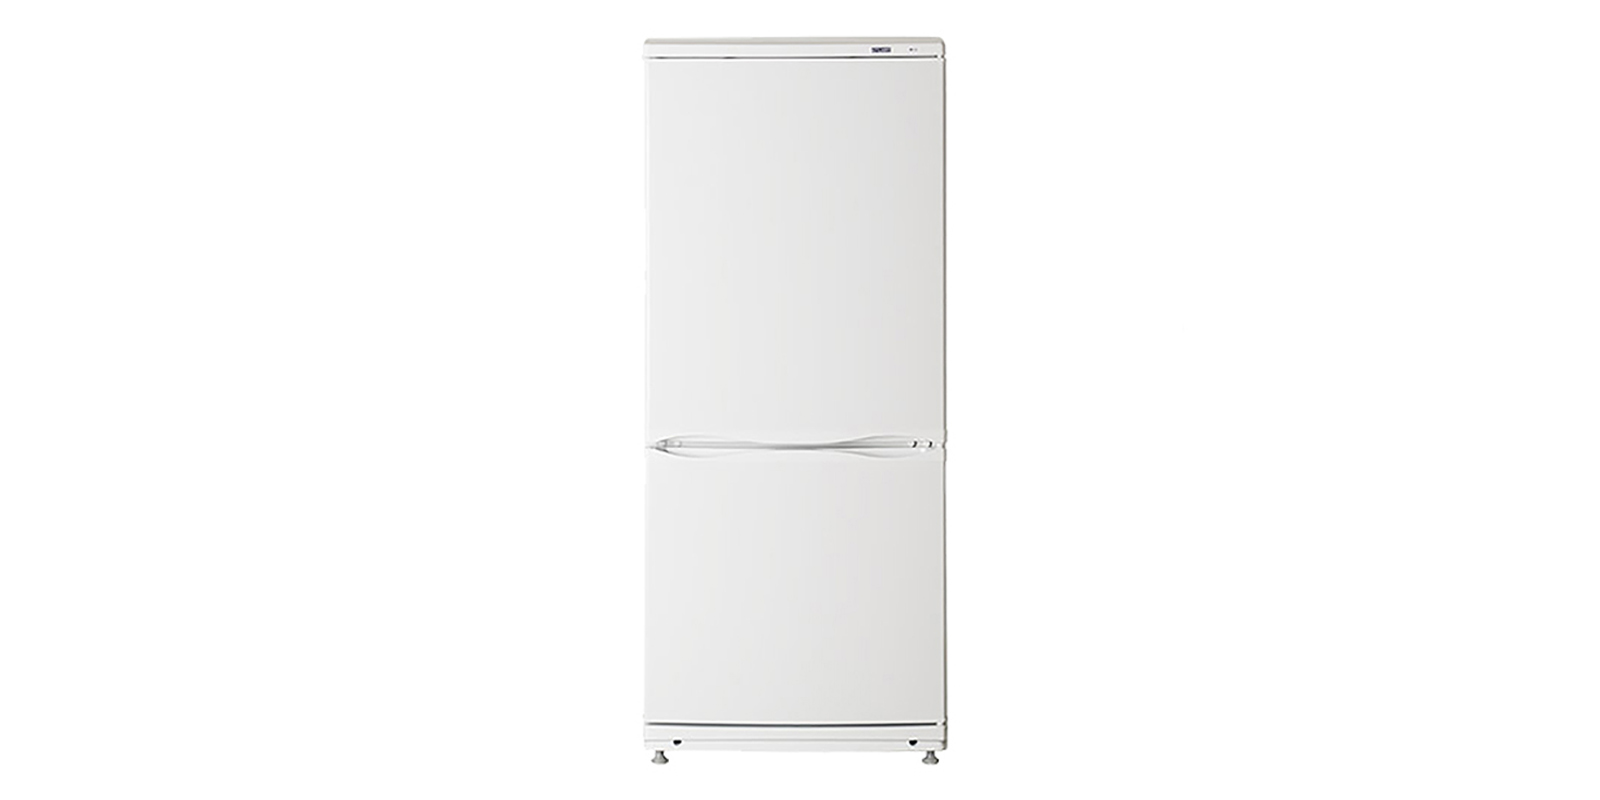 Какой атлант купить. Холодильник Атлант хм 6025. Холодильник Атлант хм 4025-000. Холодильник Атлант двухкомпрессорный 6025-031. Атлант XM 6023-031.